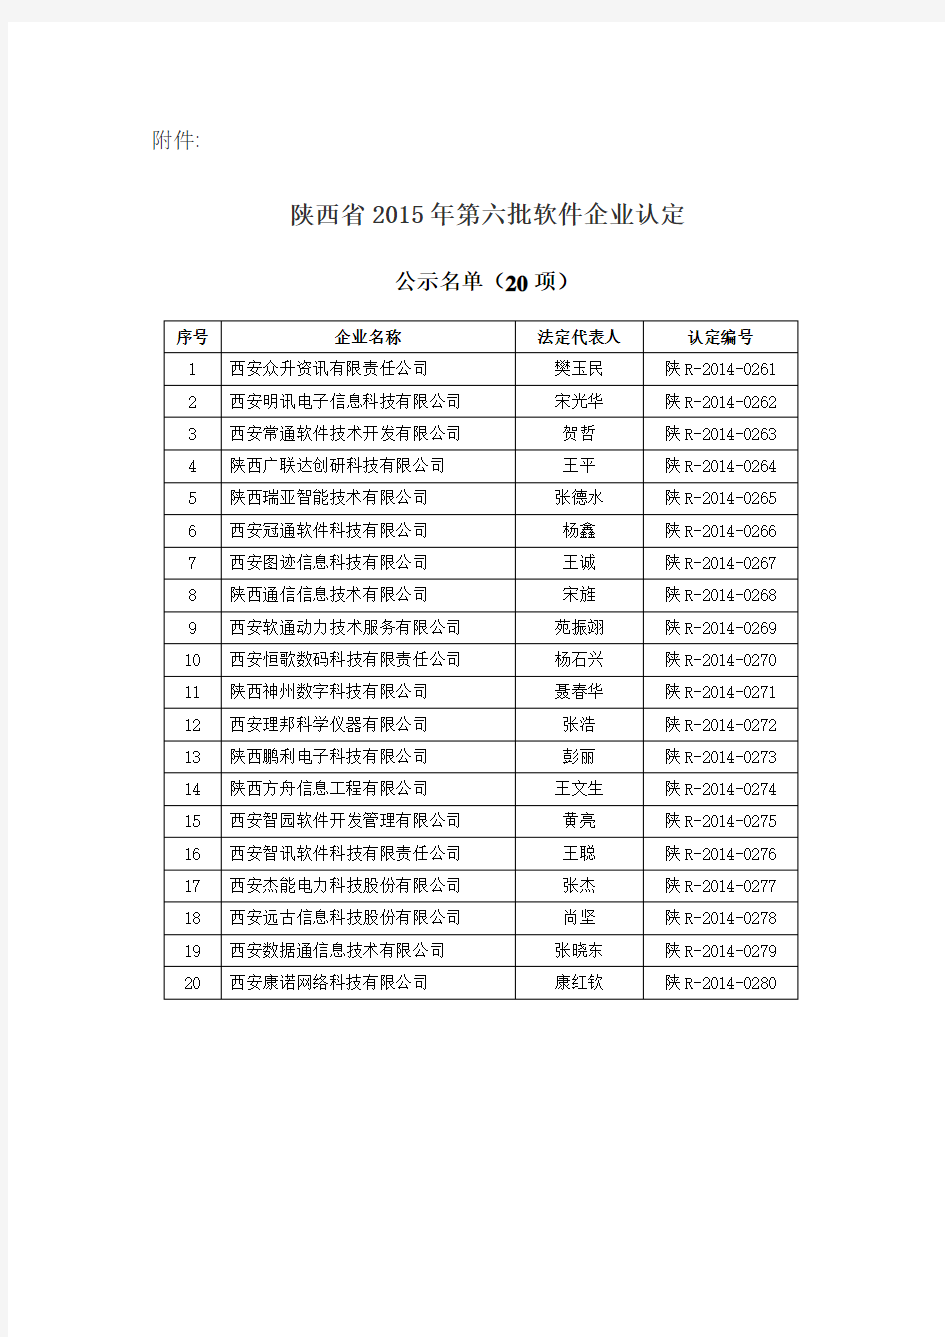 陕西省2015年第六批软件企业认定名单